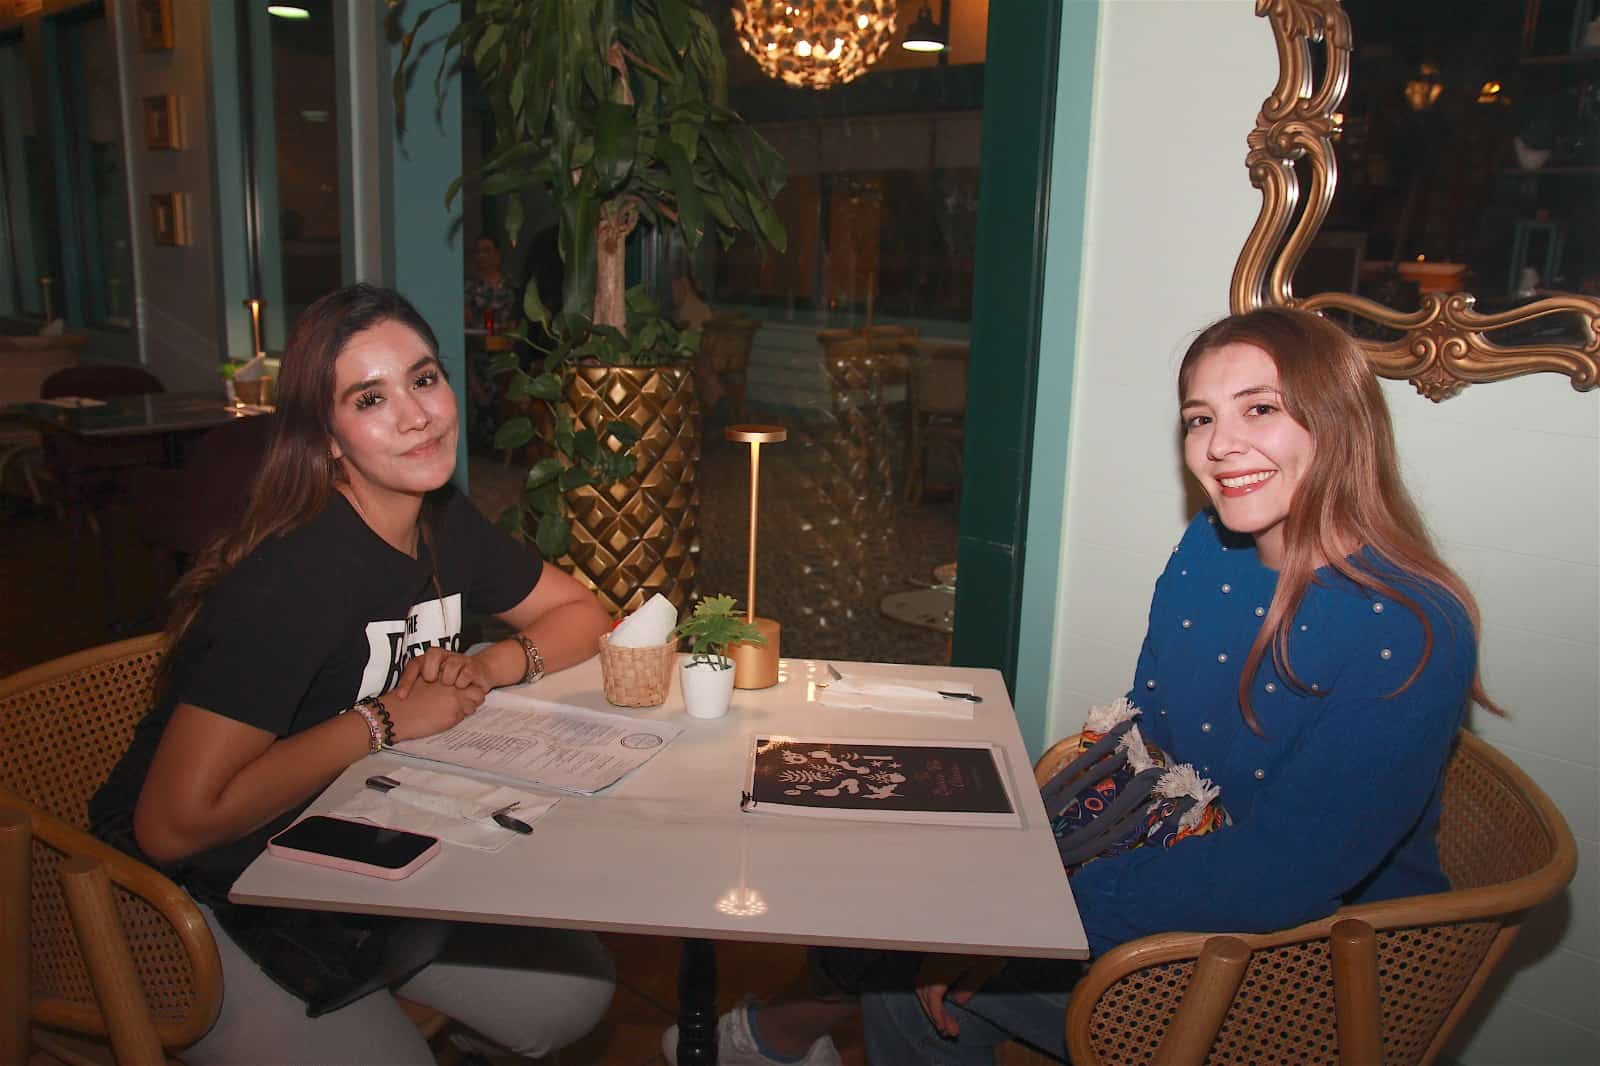 Excelente reunión con amigos En Casa Garmendia, Café y Churrería